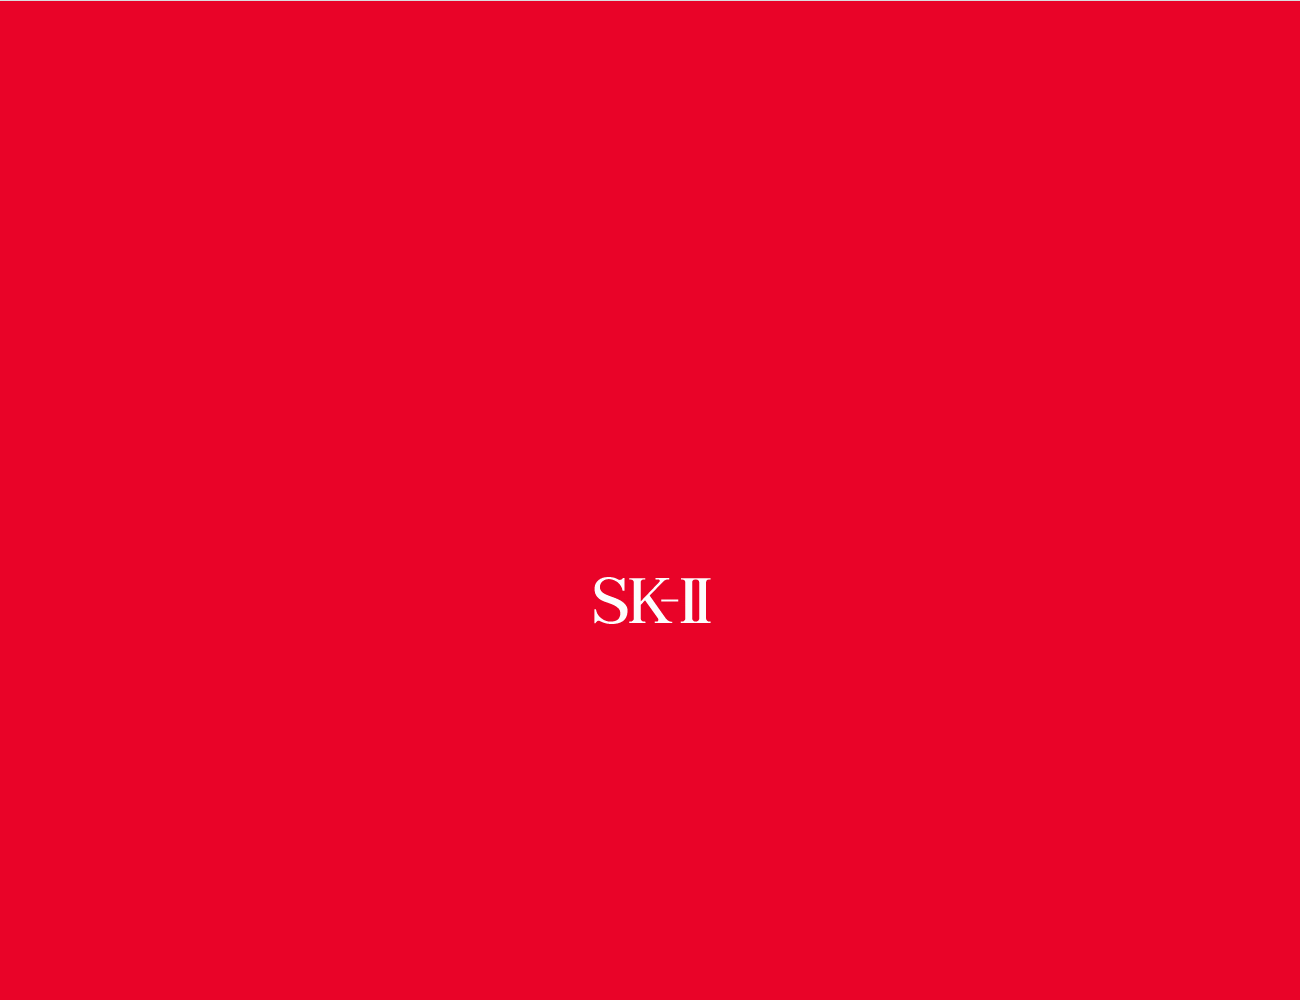 SK-II官网